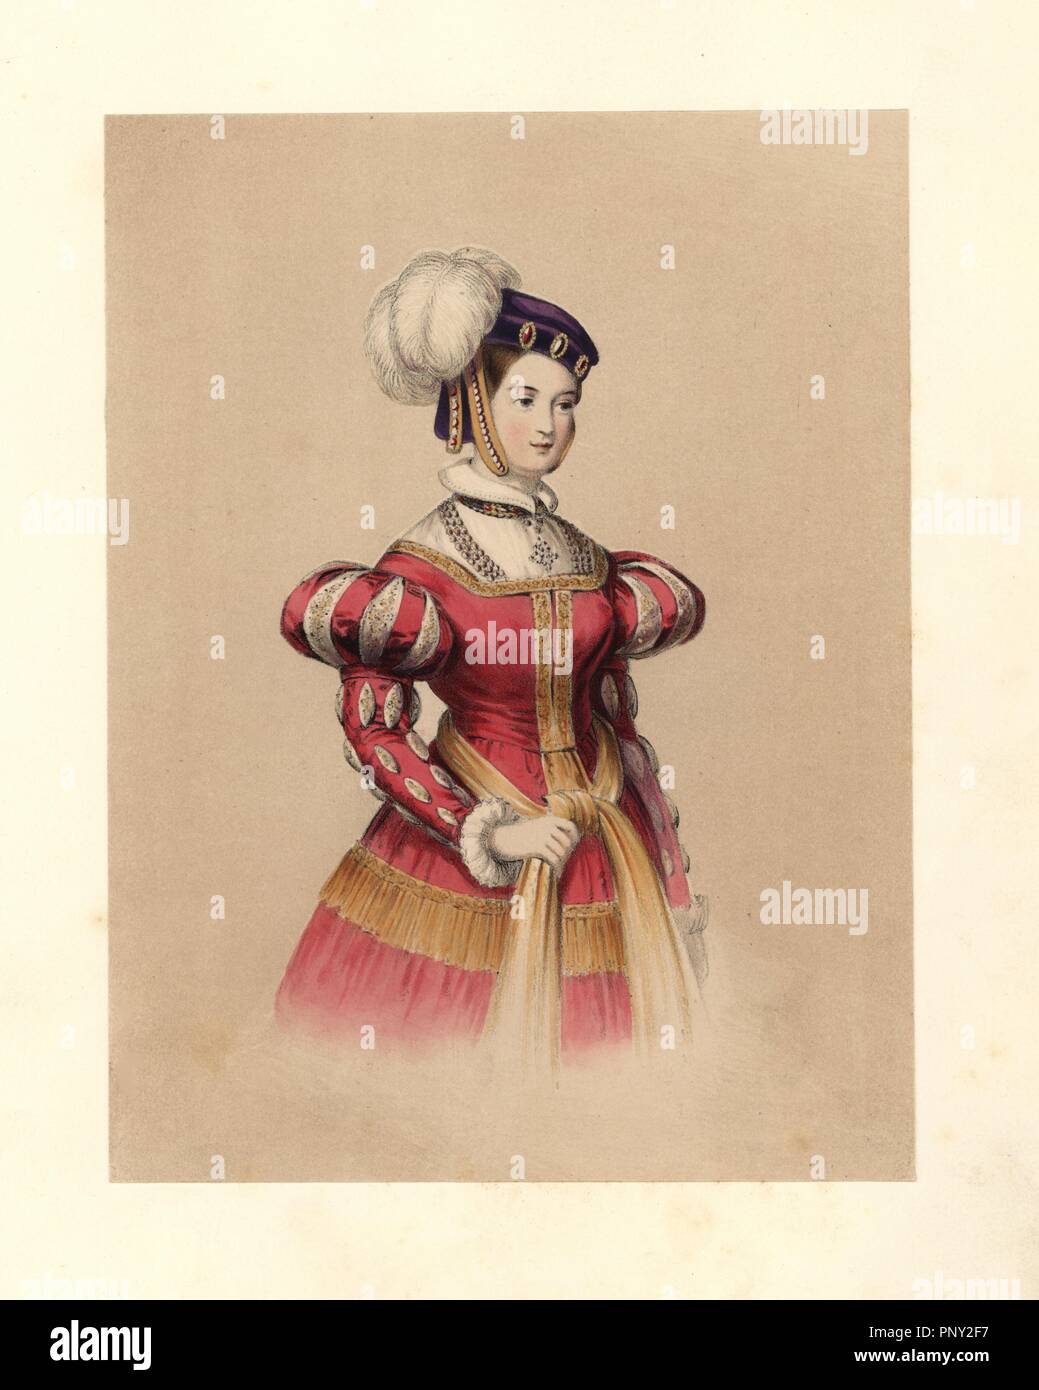 Kleid der Herrschaft von Heinrich VIII., 15091547. Sie trägt ein lila Hut  mit Juwelen und Federn geschmückt, ein rotes Kleid mit aufgeblasen und  geschlitzte Ärmel, spitzen Kragen und Ärmelabschluss. Basierend auf einem